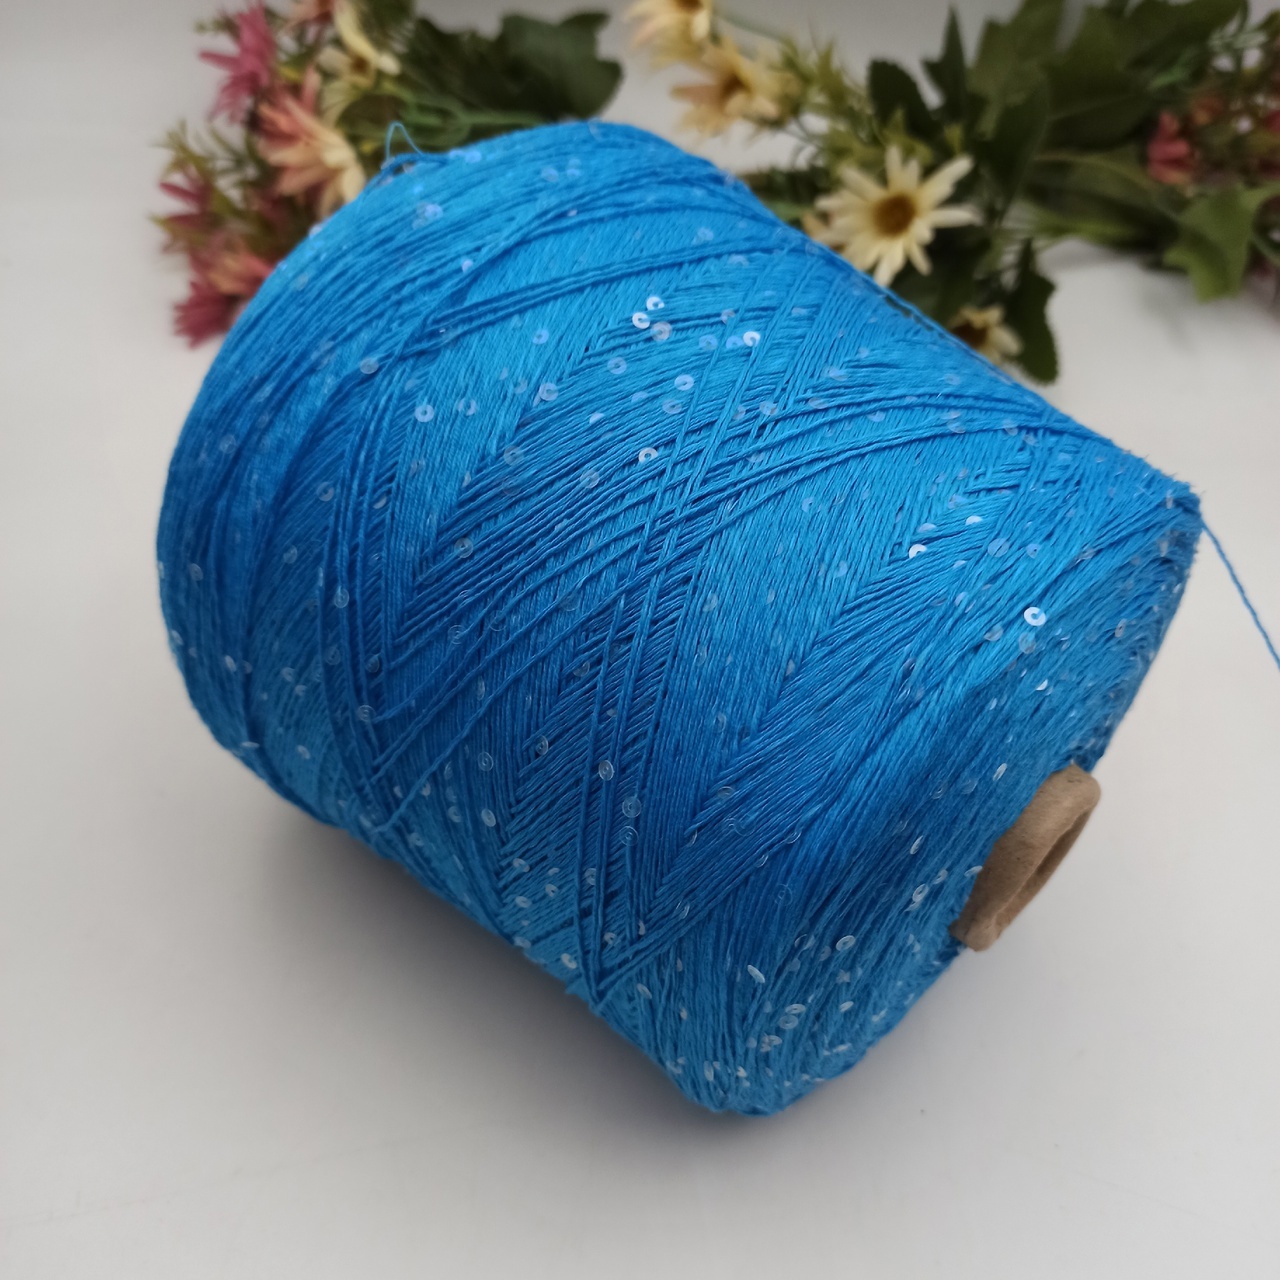 Cotton Stellar - 010 Яркий голубой, пайетка прозрачная 3мм